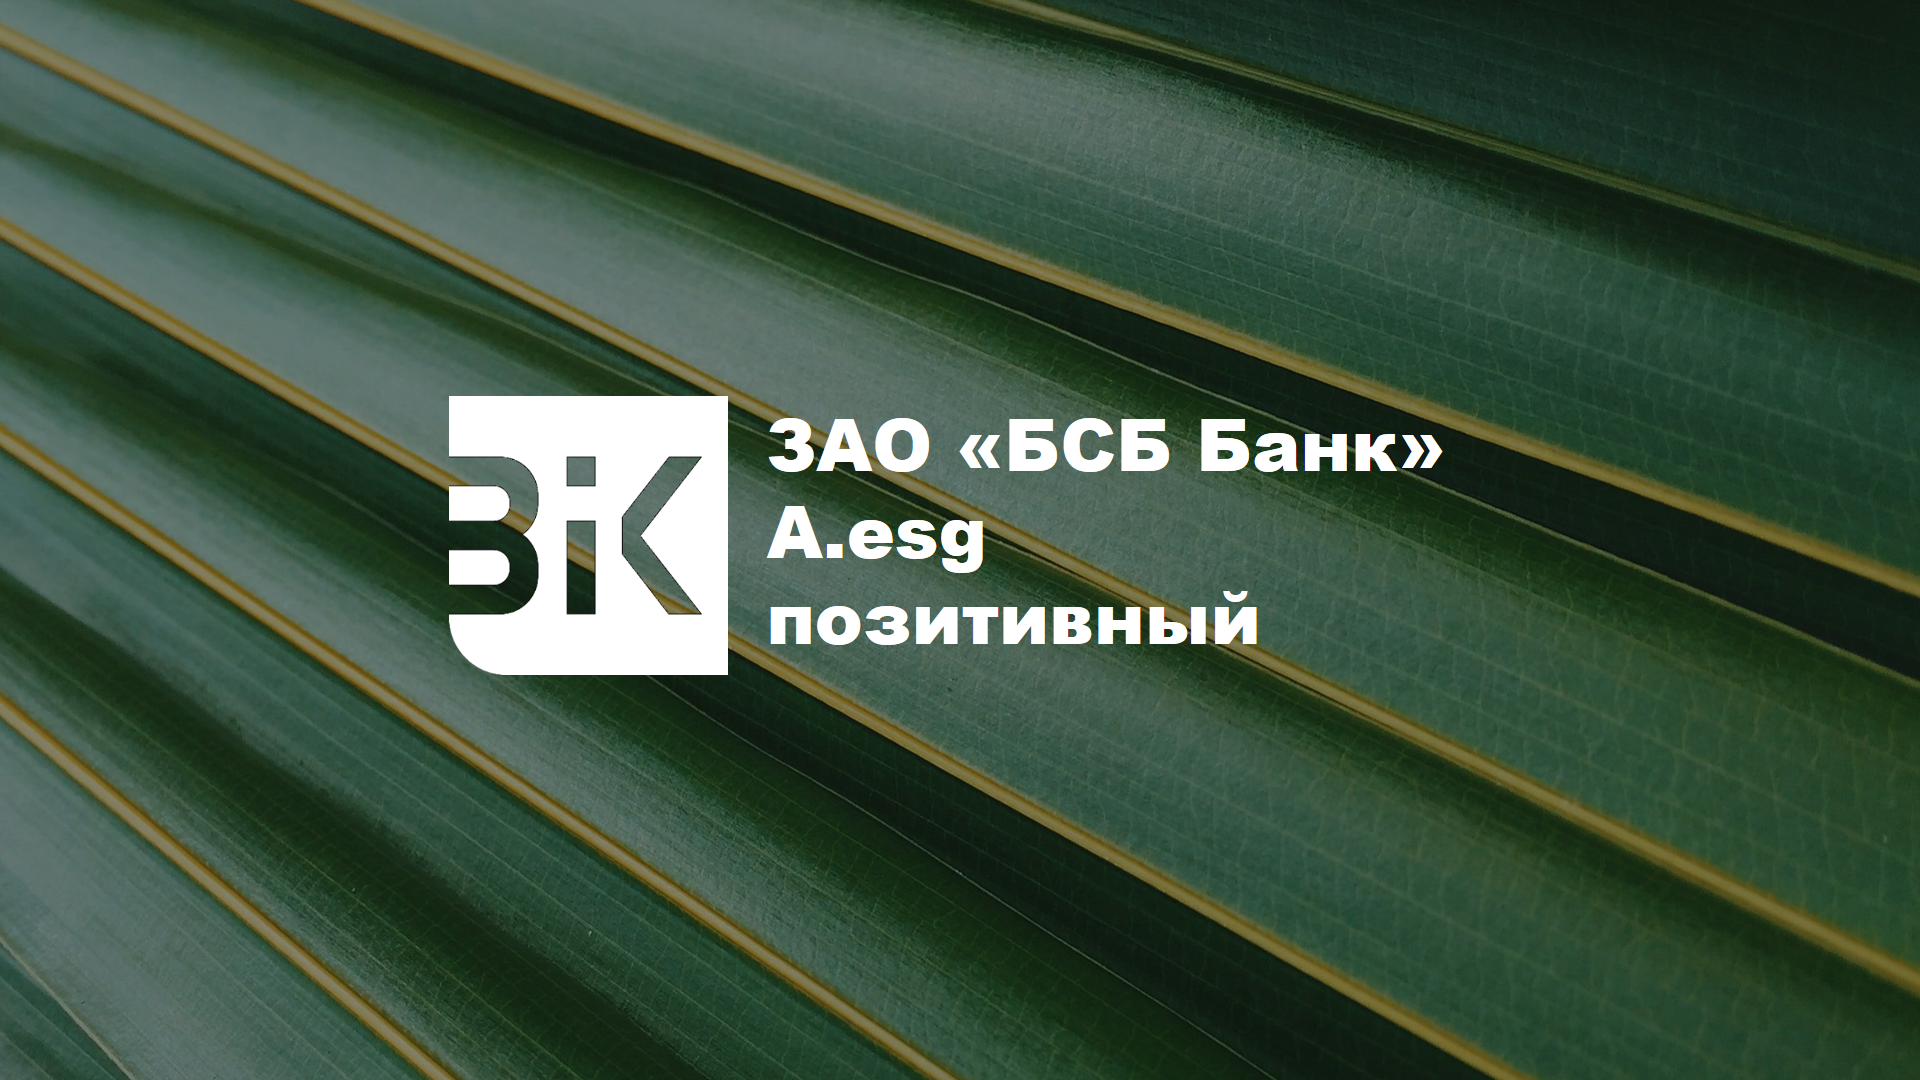 ЗАО «БСБ Банк» ESG-рейтинг на уровне A.esg (прогноз позитивный)